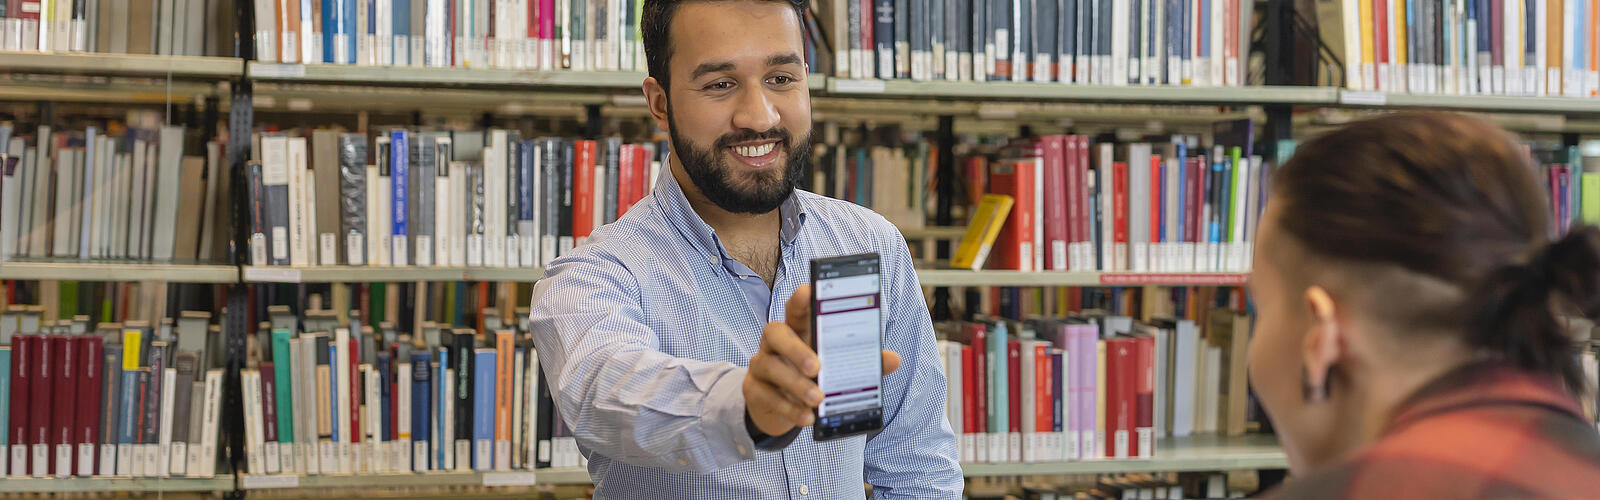 Besucher in der Bibliothek mit einem Handy in der Hand